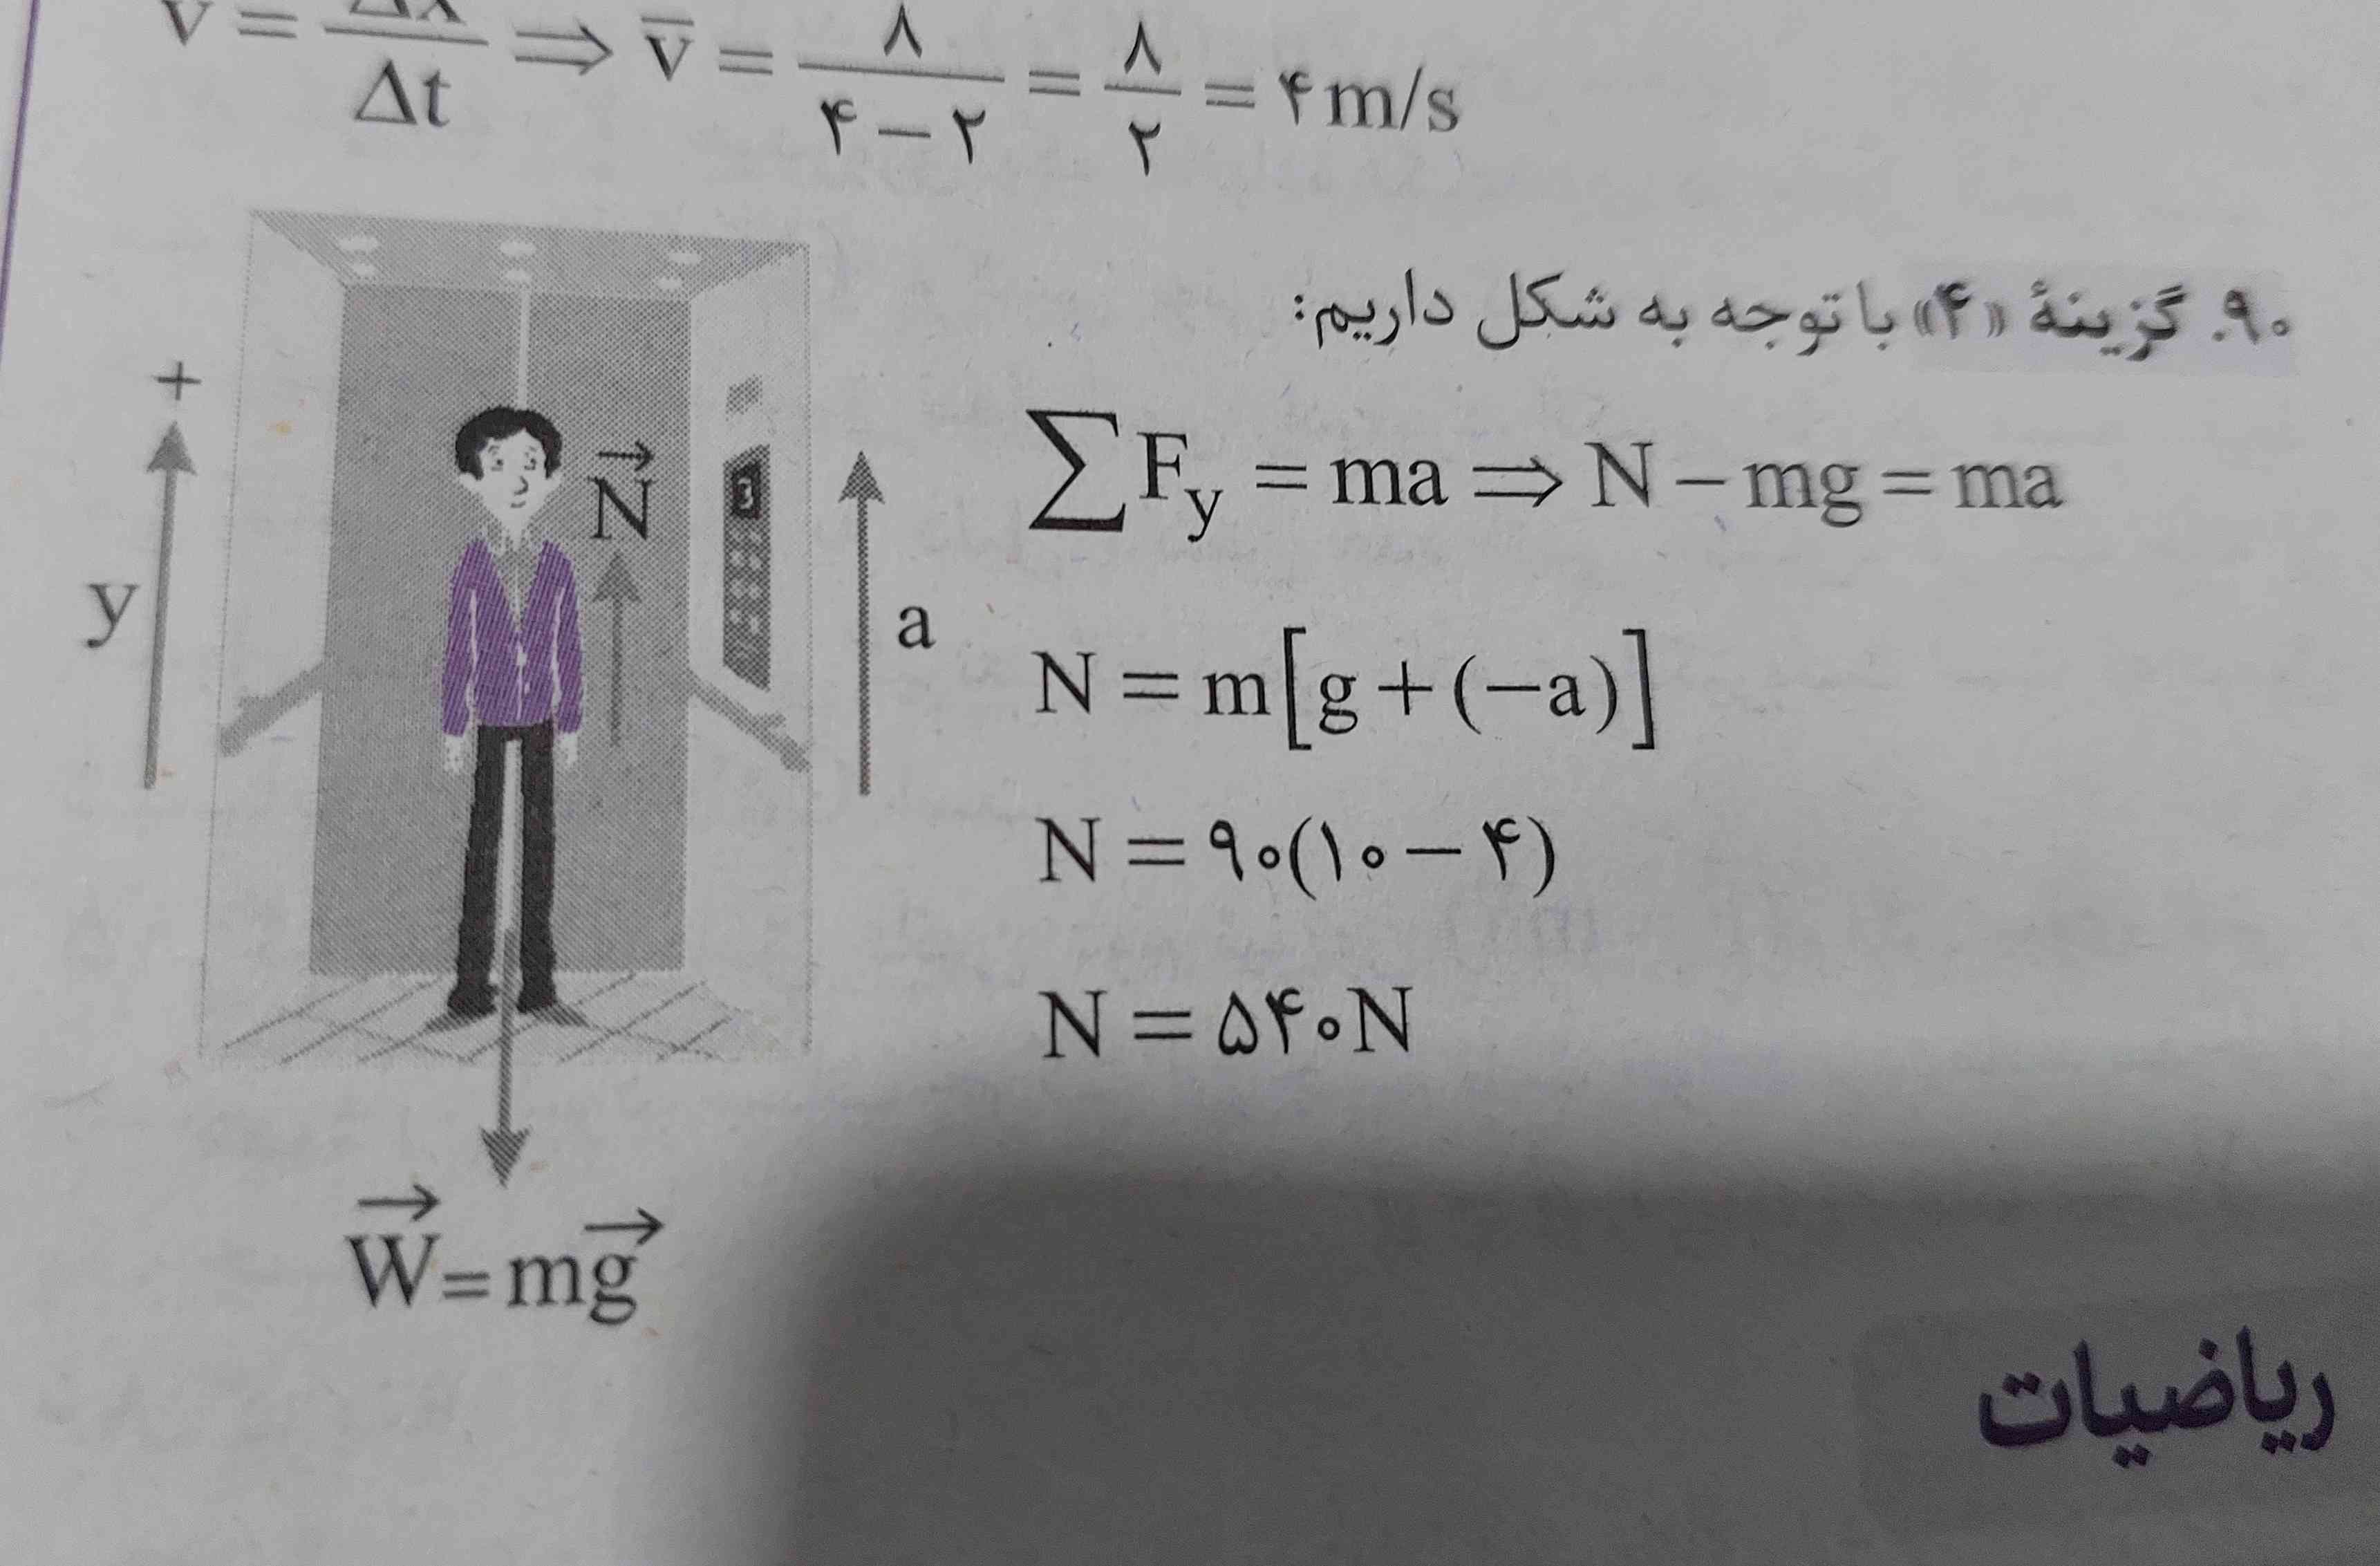 بچه ها کسی میتونه این معادله رو برام توضیح بده؟ اصلا سیگما از کجا اومد؟ 